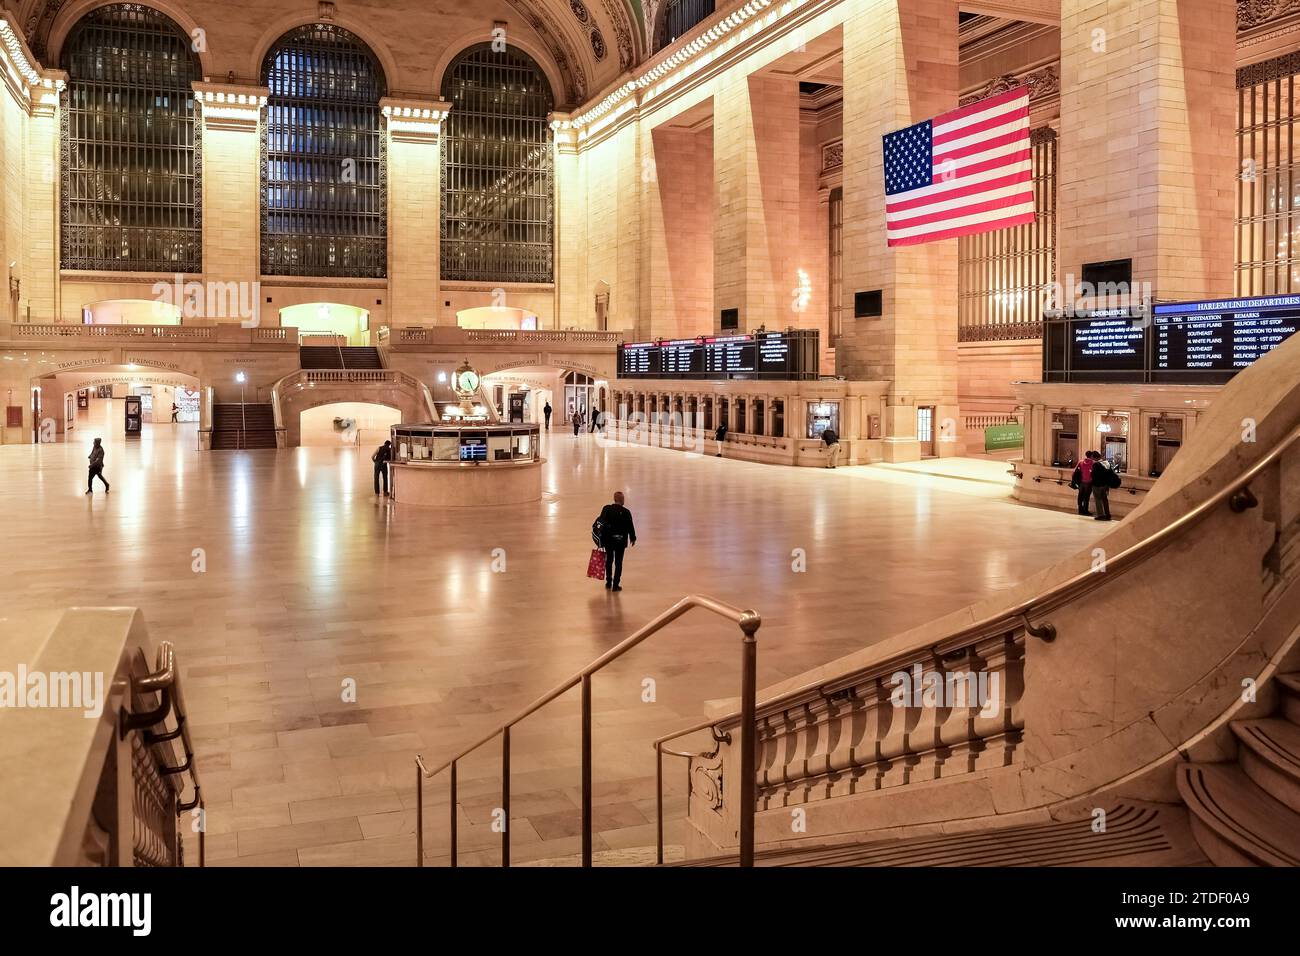 Architektonische Details des Grand Central Terminals, drittgrößte von Nordamerika, Midtown Manhattan, New York City, Vereinigte Staaten von Amerika Stockfoto